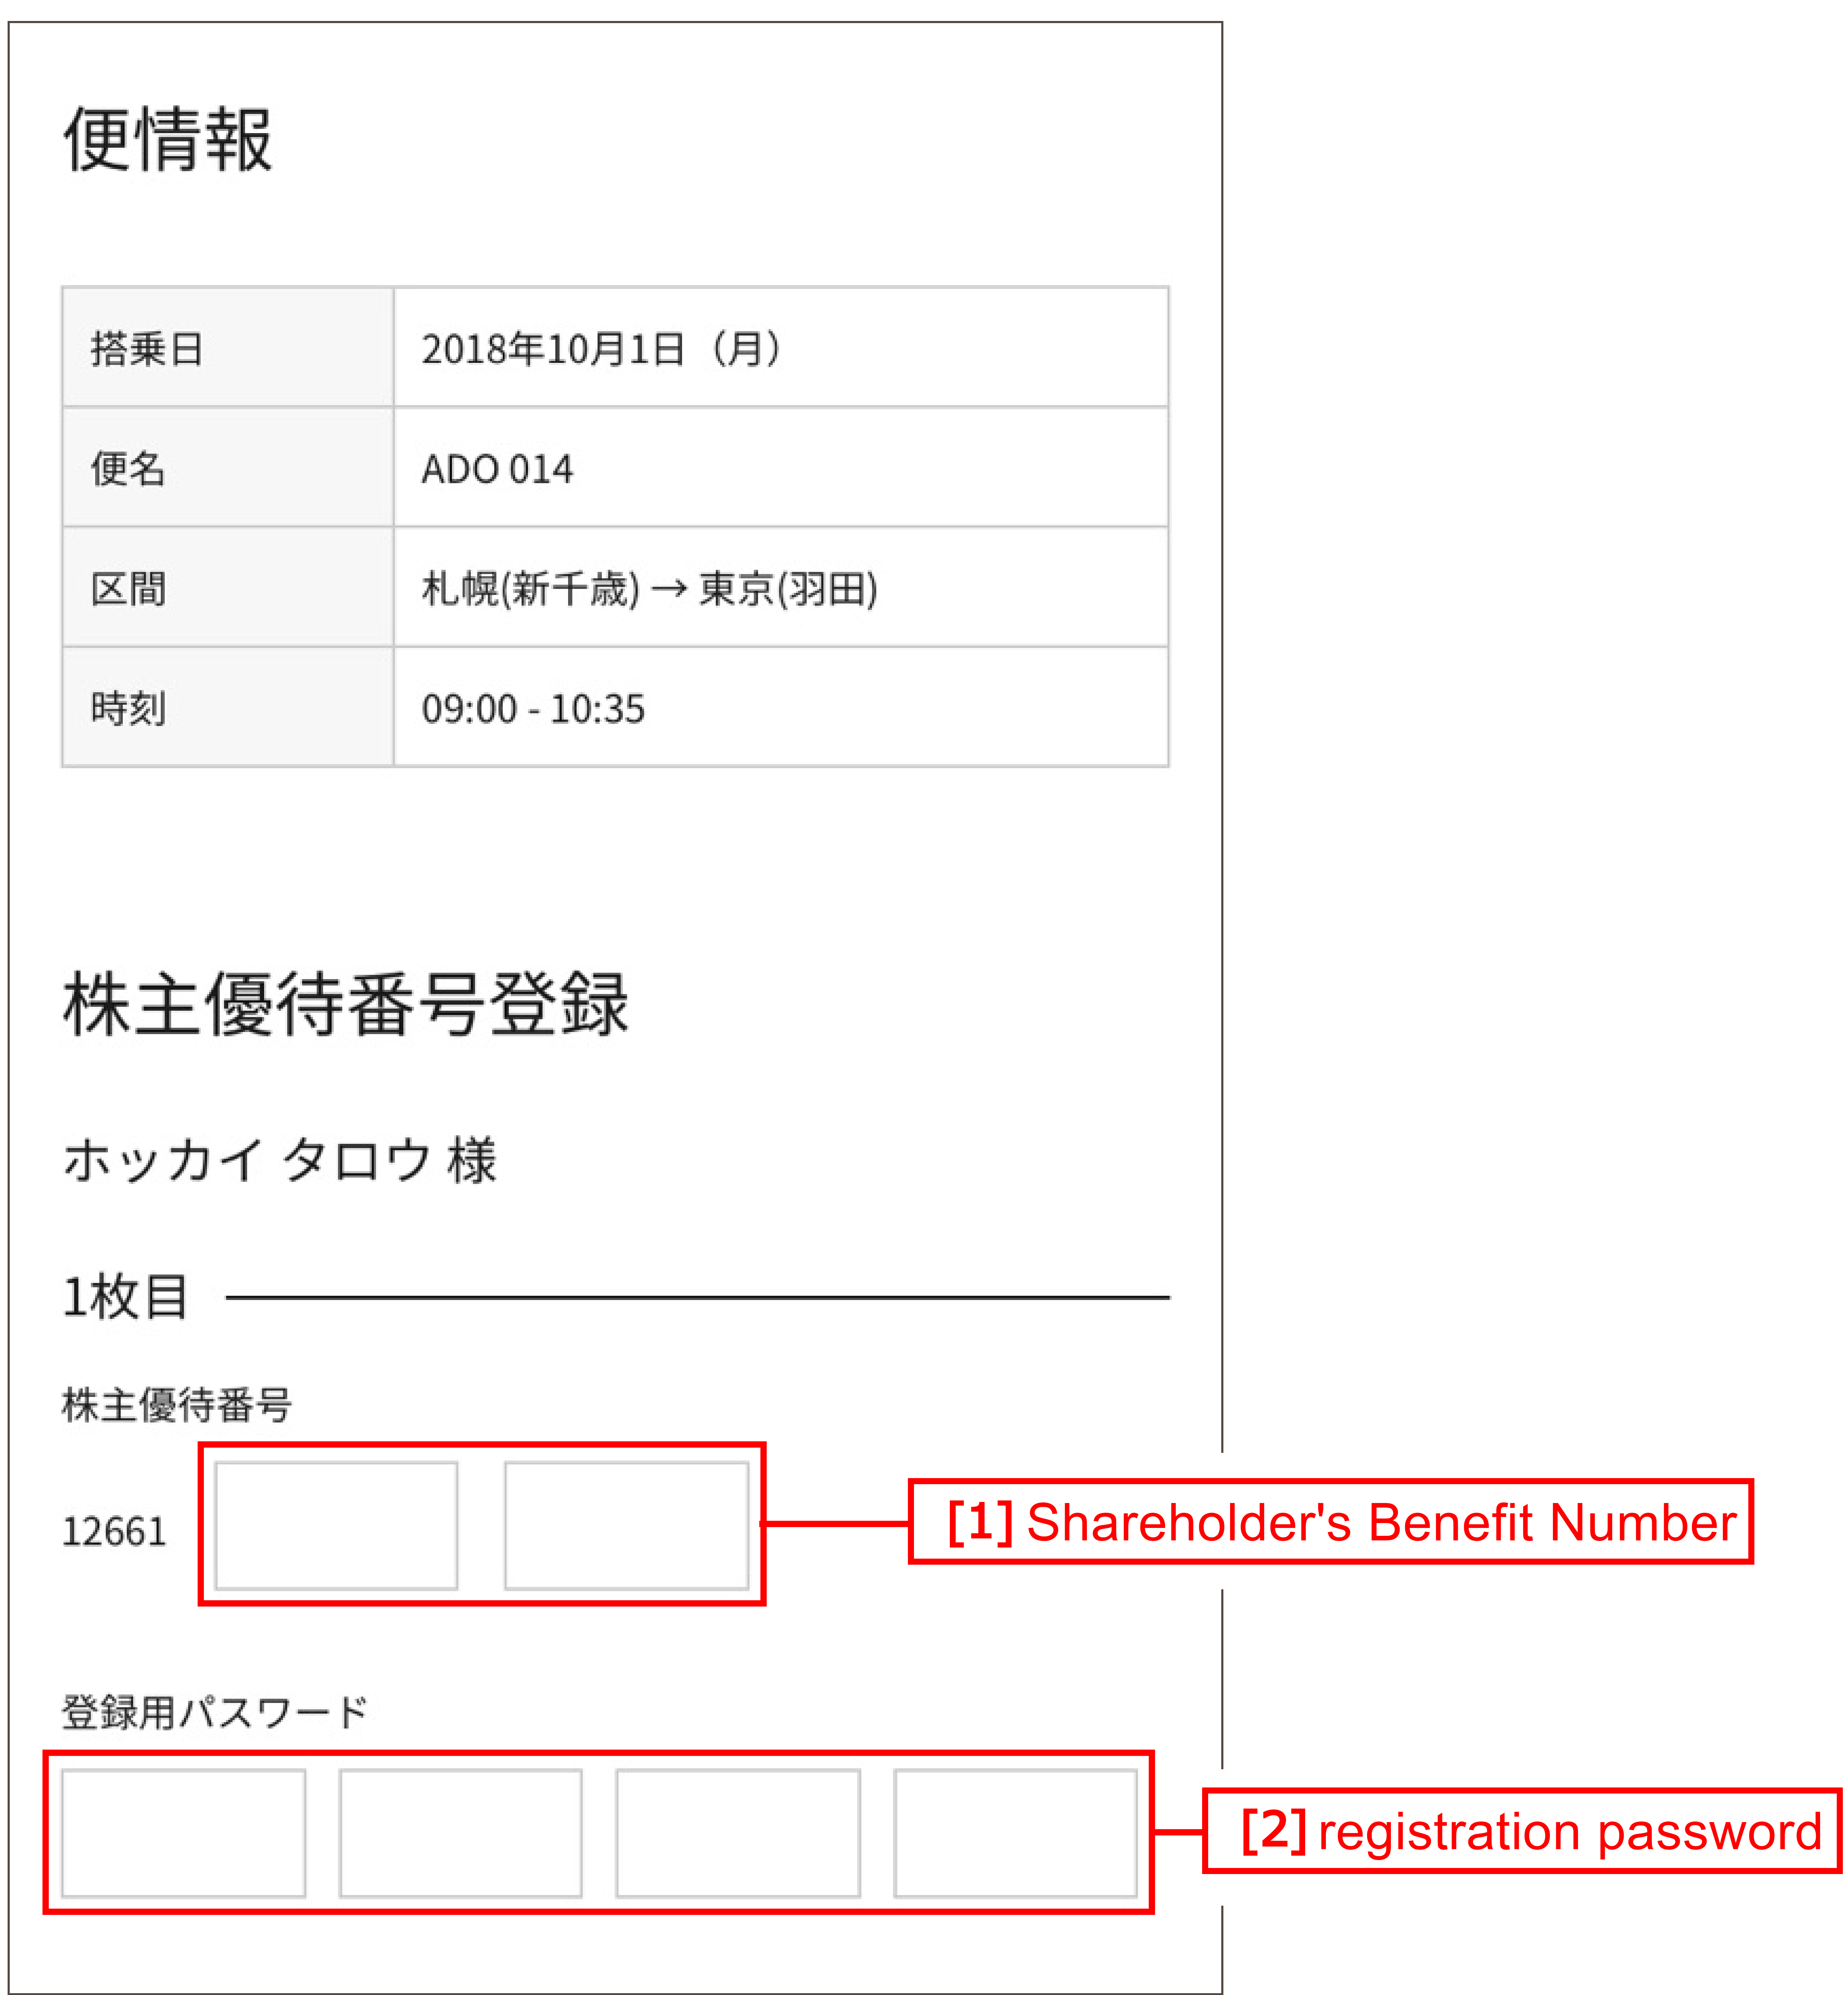 【Cellular phone】AIRDO Website Shareholder's Benefit Number Registration Screen